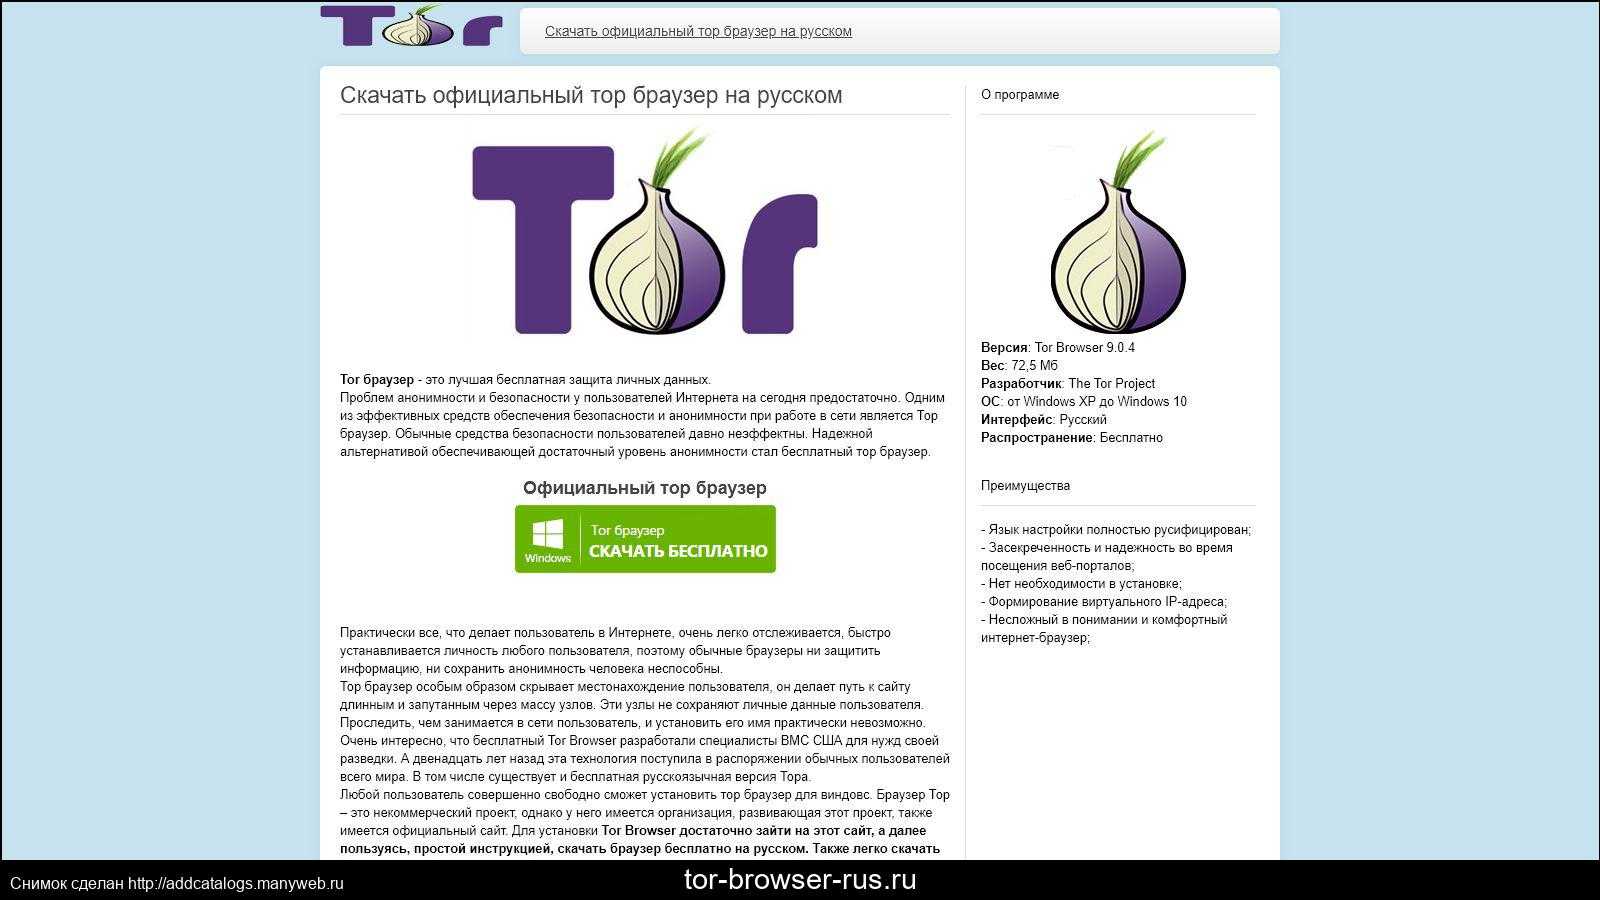 тор браузер официальный сайт скачать бесплатно на русском для windows 8 gydra